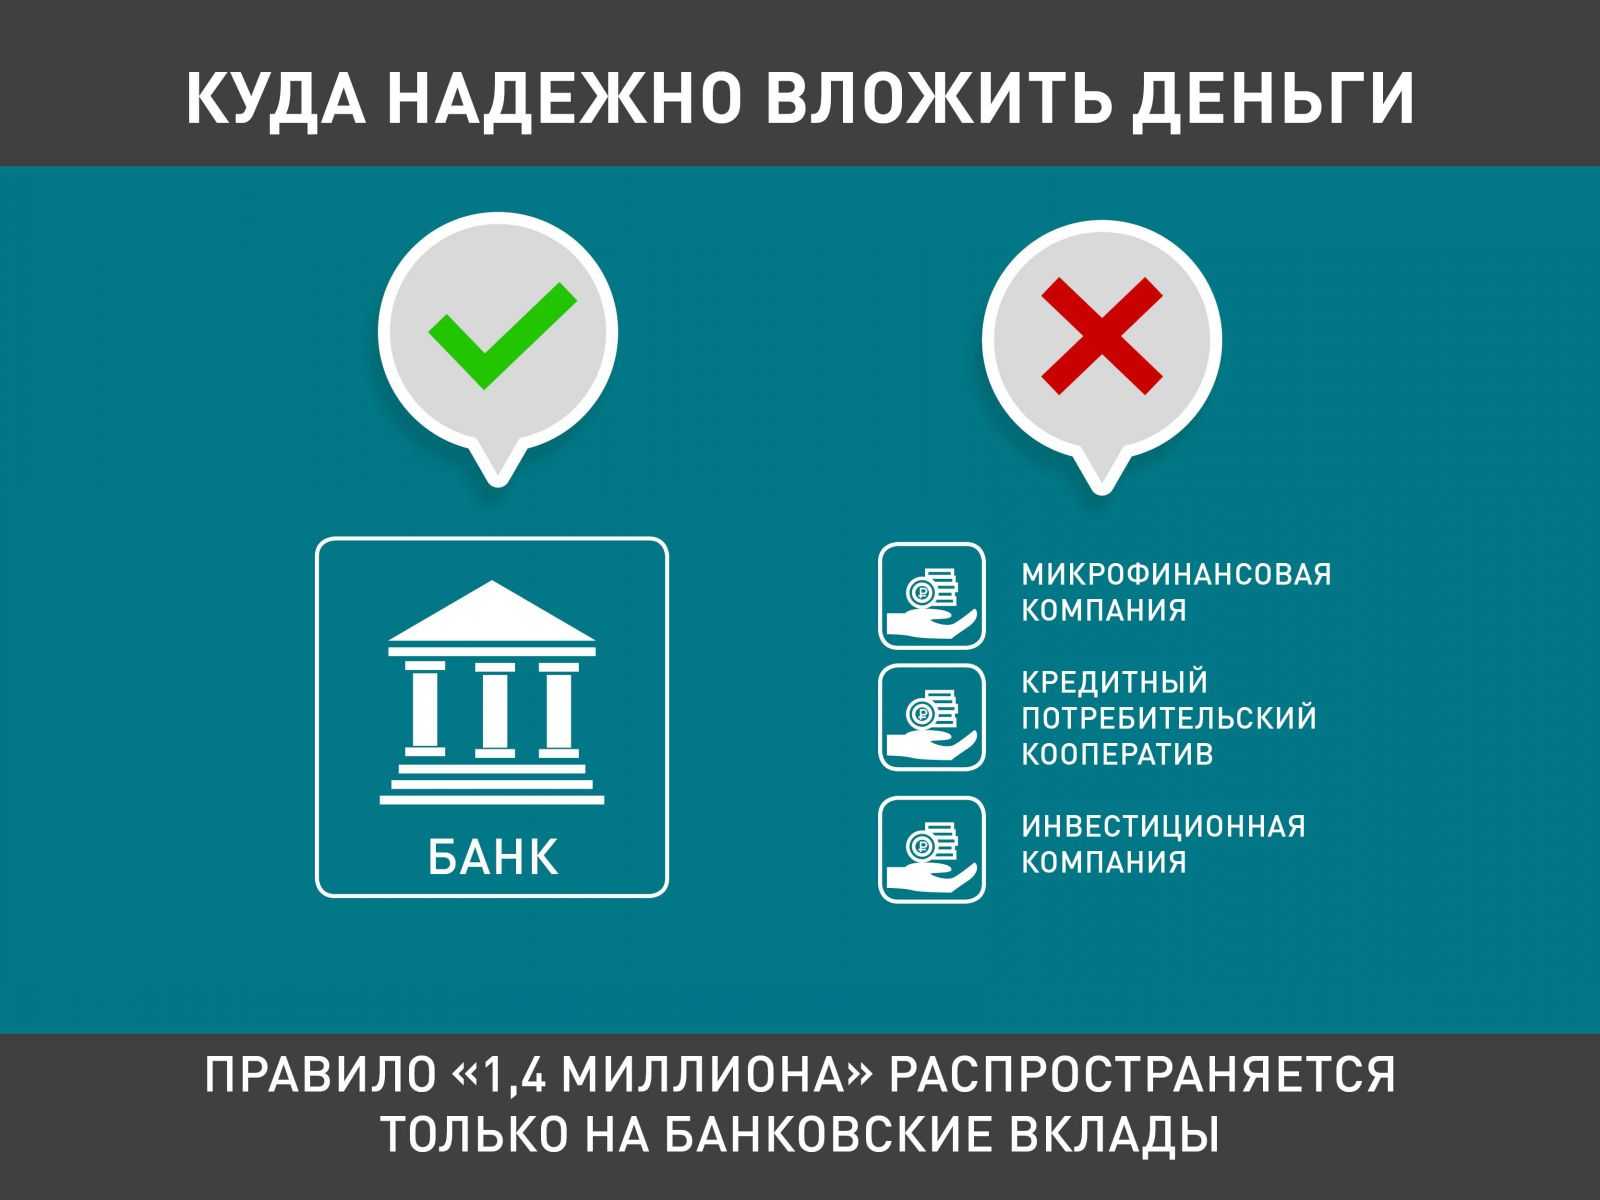 Сколько нужно вложить, чтобы получать 10.000 рублей ежемесячно?